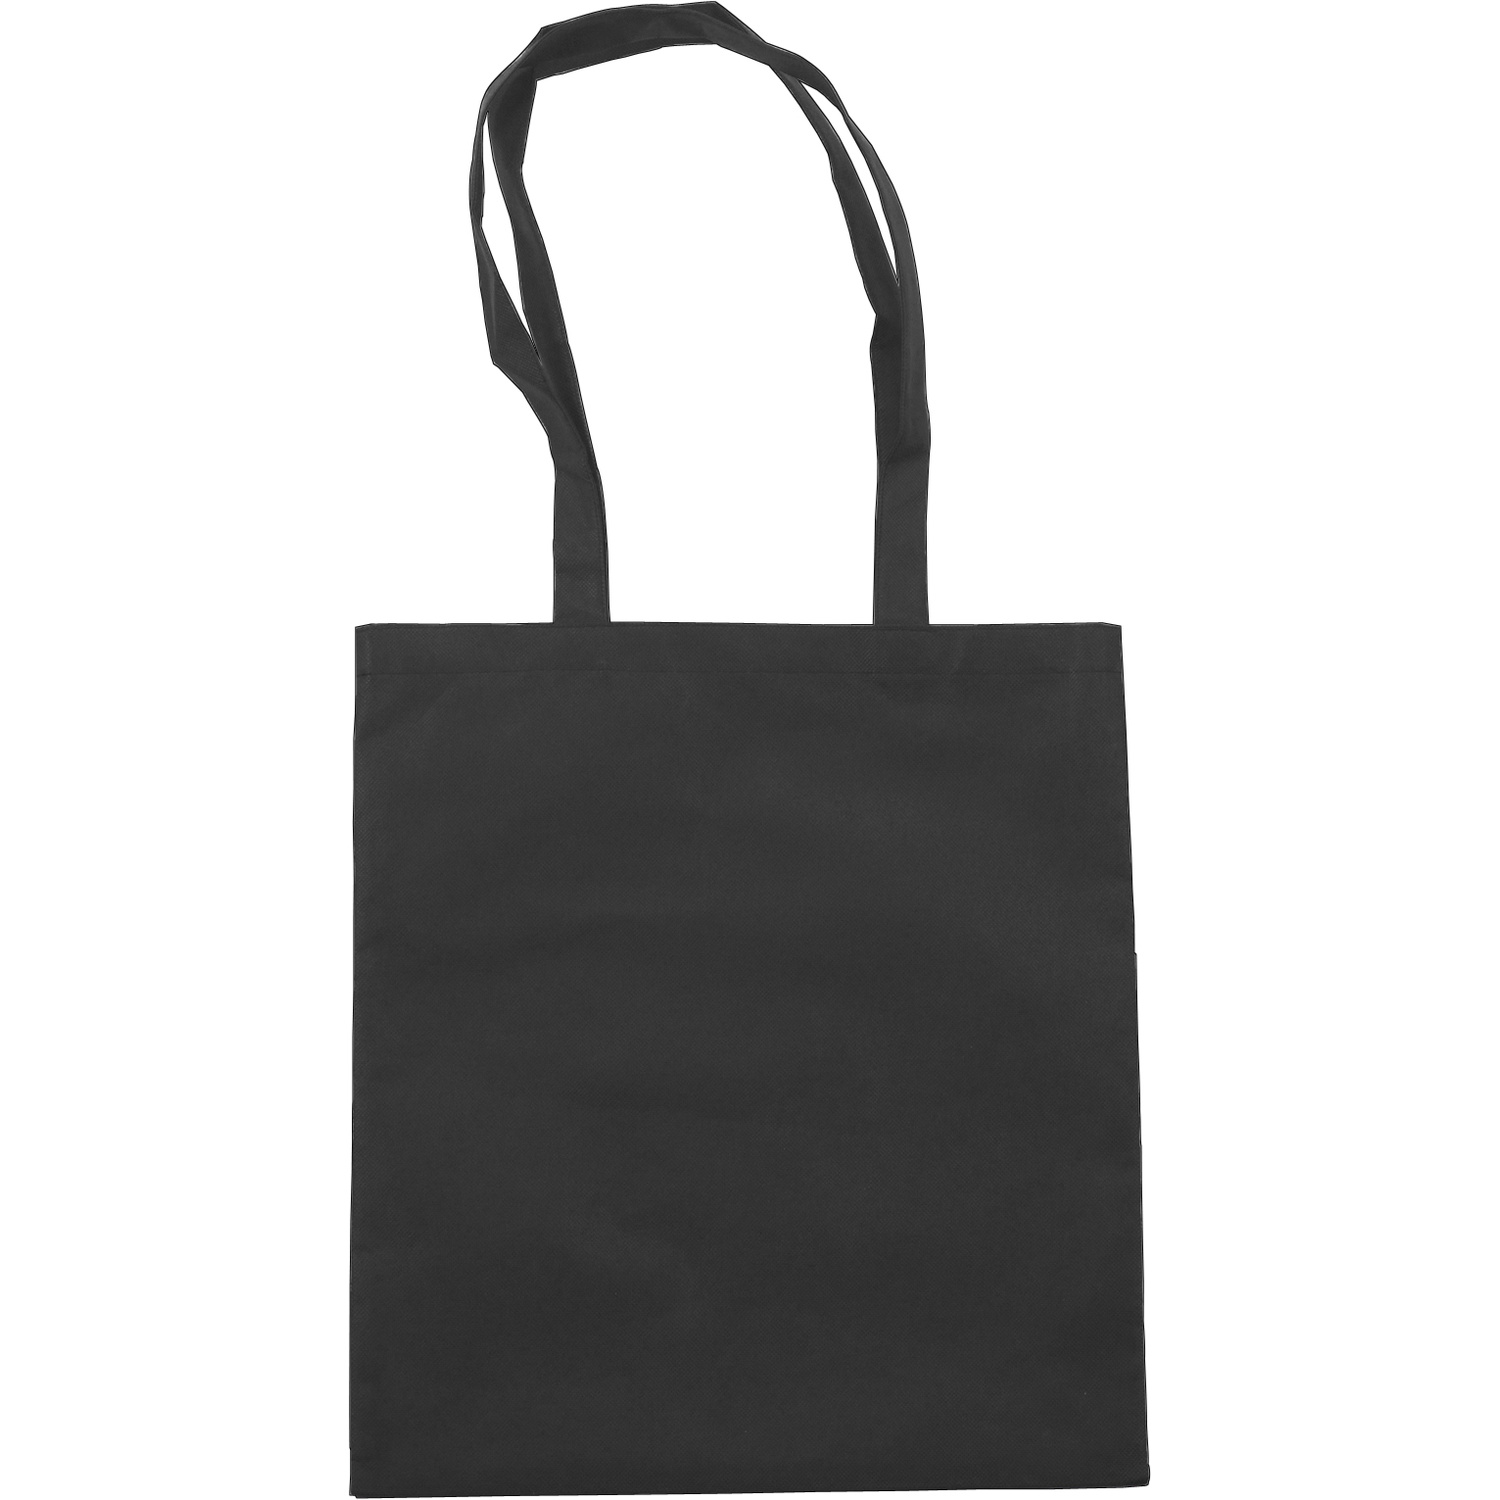 006227 001999999 2d090 frt pro01 fal - Non-Woven Coloured Shopping Bag